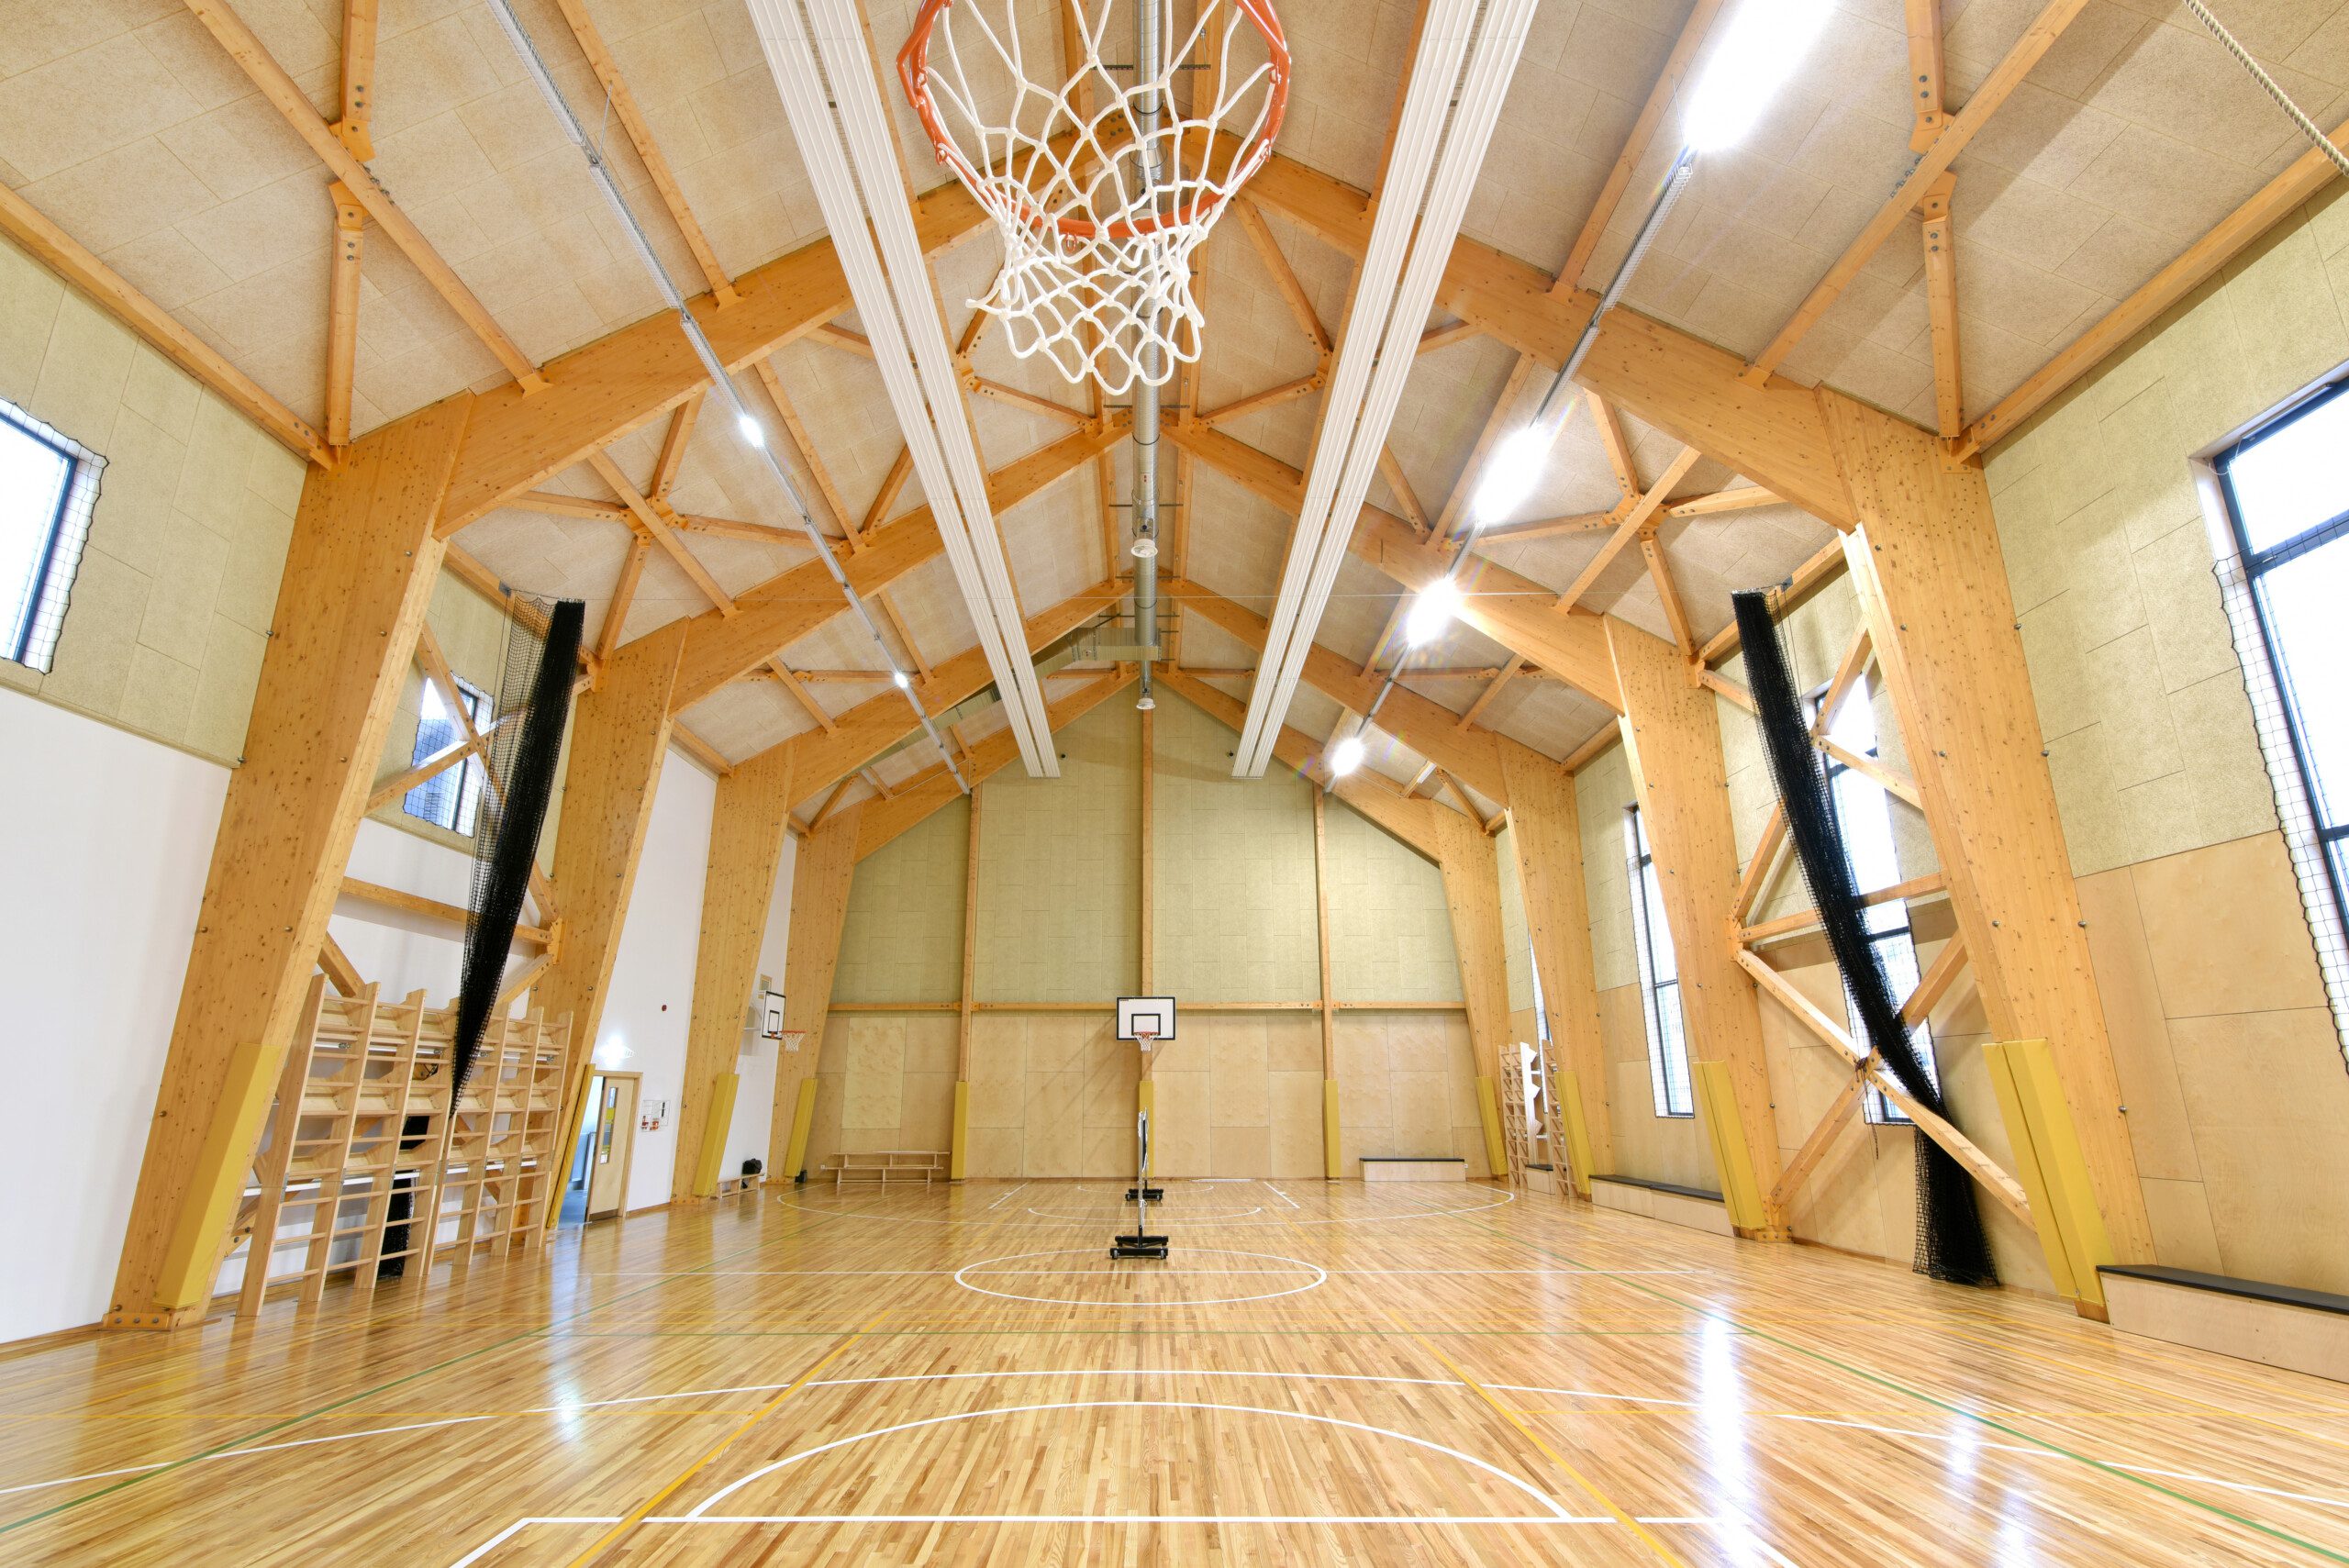 Sports hall in Latvia Photo 5